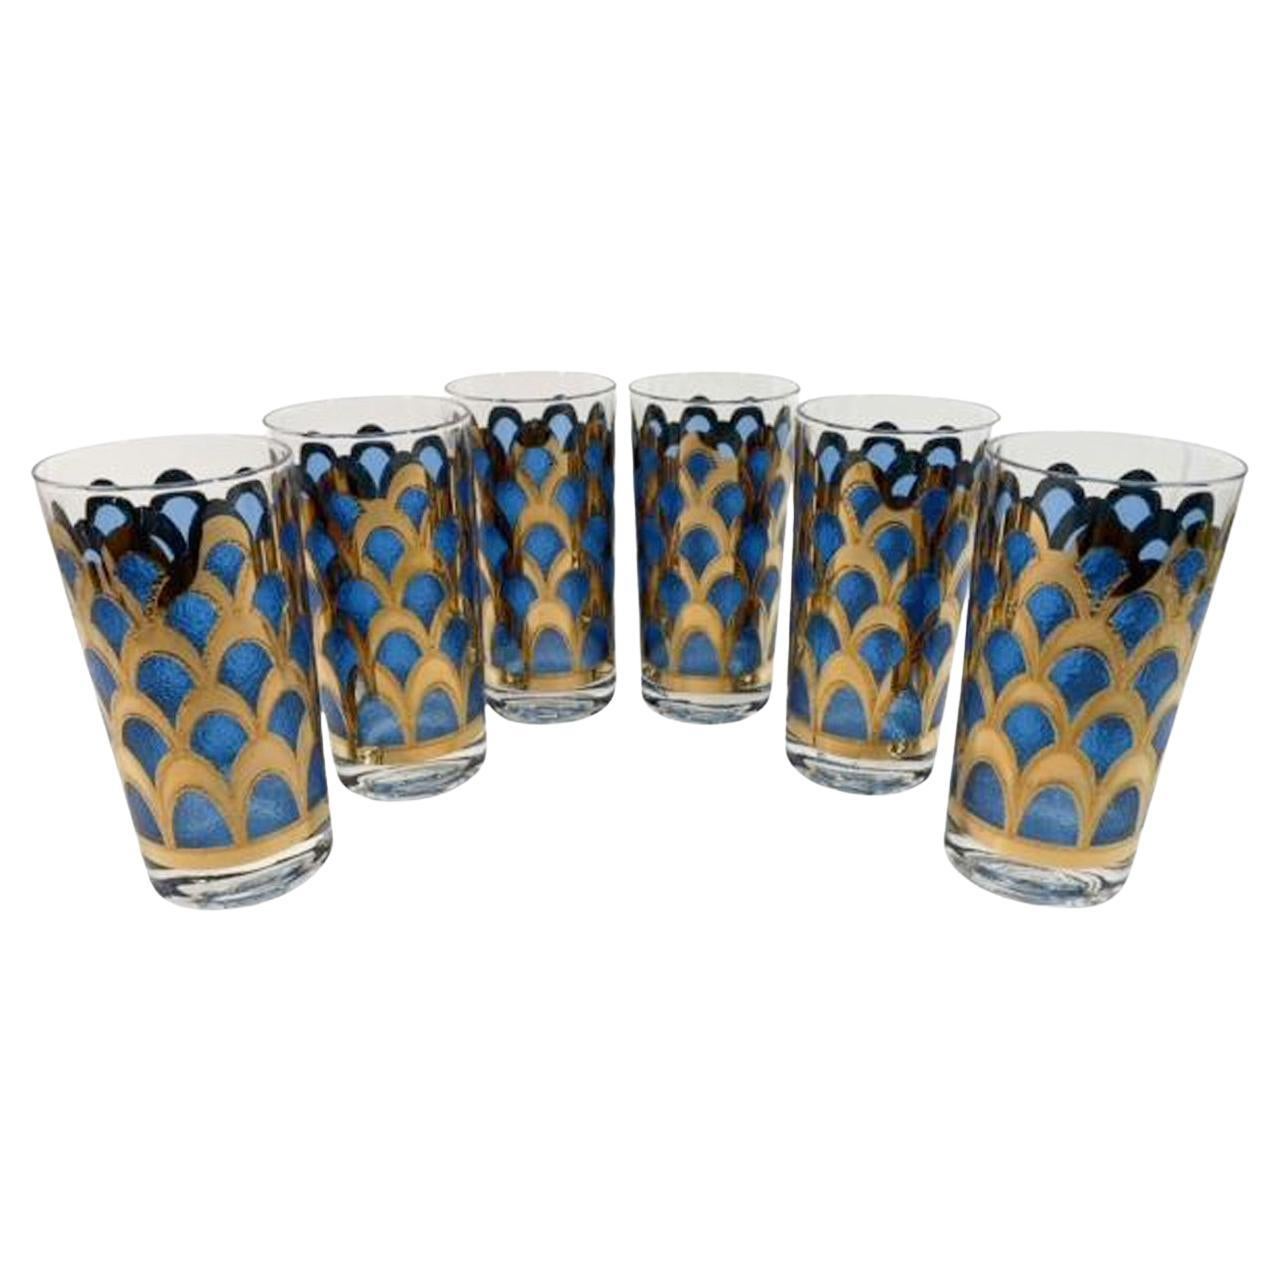 Vintage Highball Glasses Designed by Irene Pasinski Translucent Blue & 22k Gold For Sale